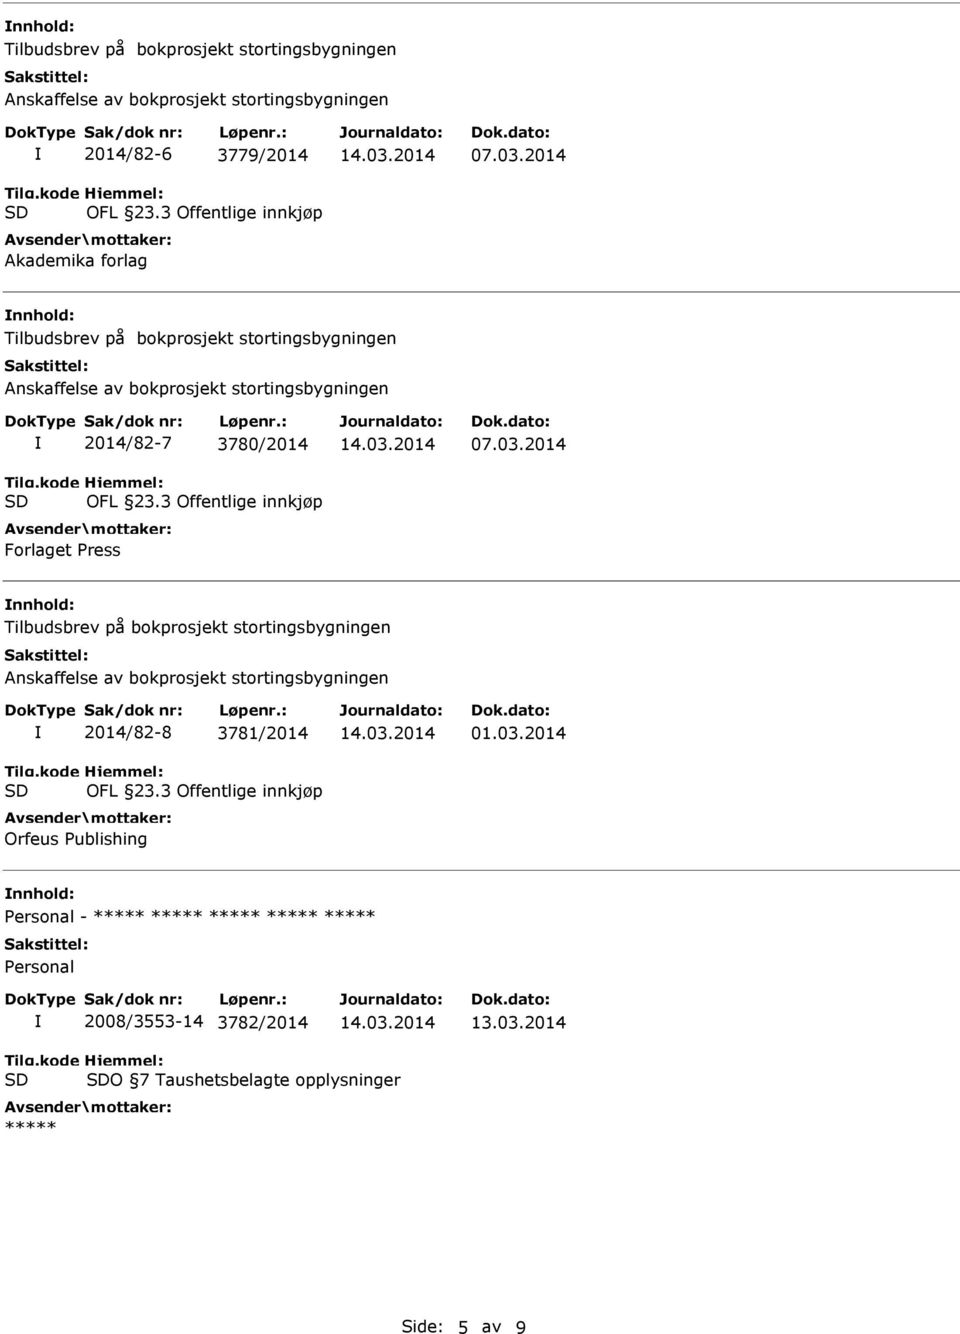 2014 nnhold: Tilbudsbrev på bokprosjekt stortingsbygningen Anskaffelse av bokprosjekt stortingsbygningen 2014/82-7 3780/2014 Forlaget